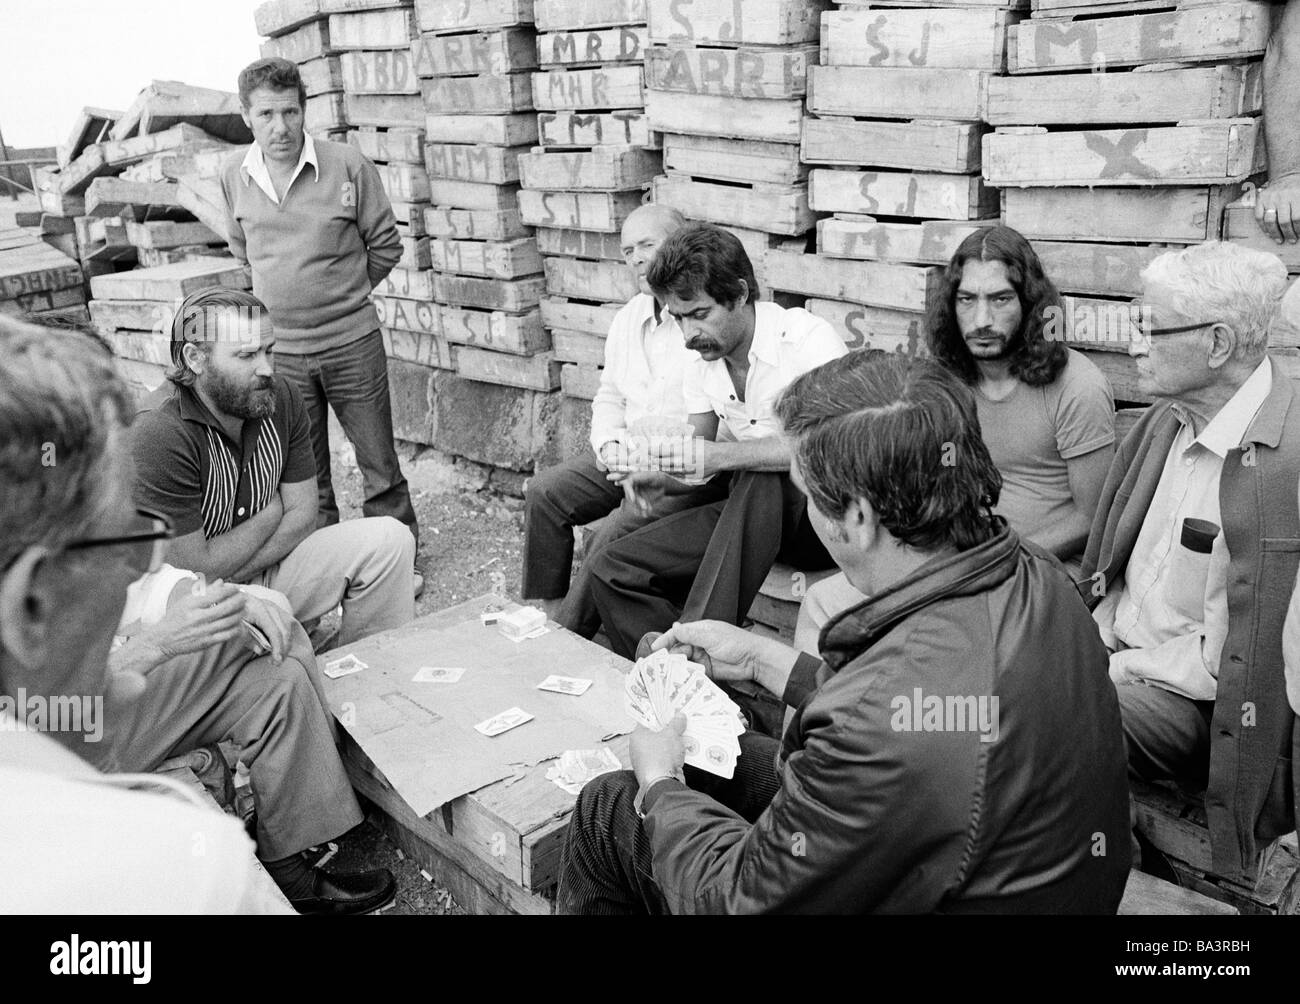 Années 1980, photo en noir et blanc, plusieurs pêcheurs dans le port de pêche de Puerto de la Cruz ont une pause et jouer aux cartes devant un lot de boîtes en bois, de 40 à 70 ans, l'Espagne, Îles Canaries, Tenerife Banque D'Images